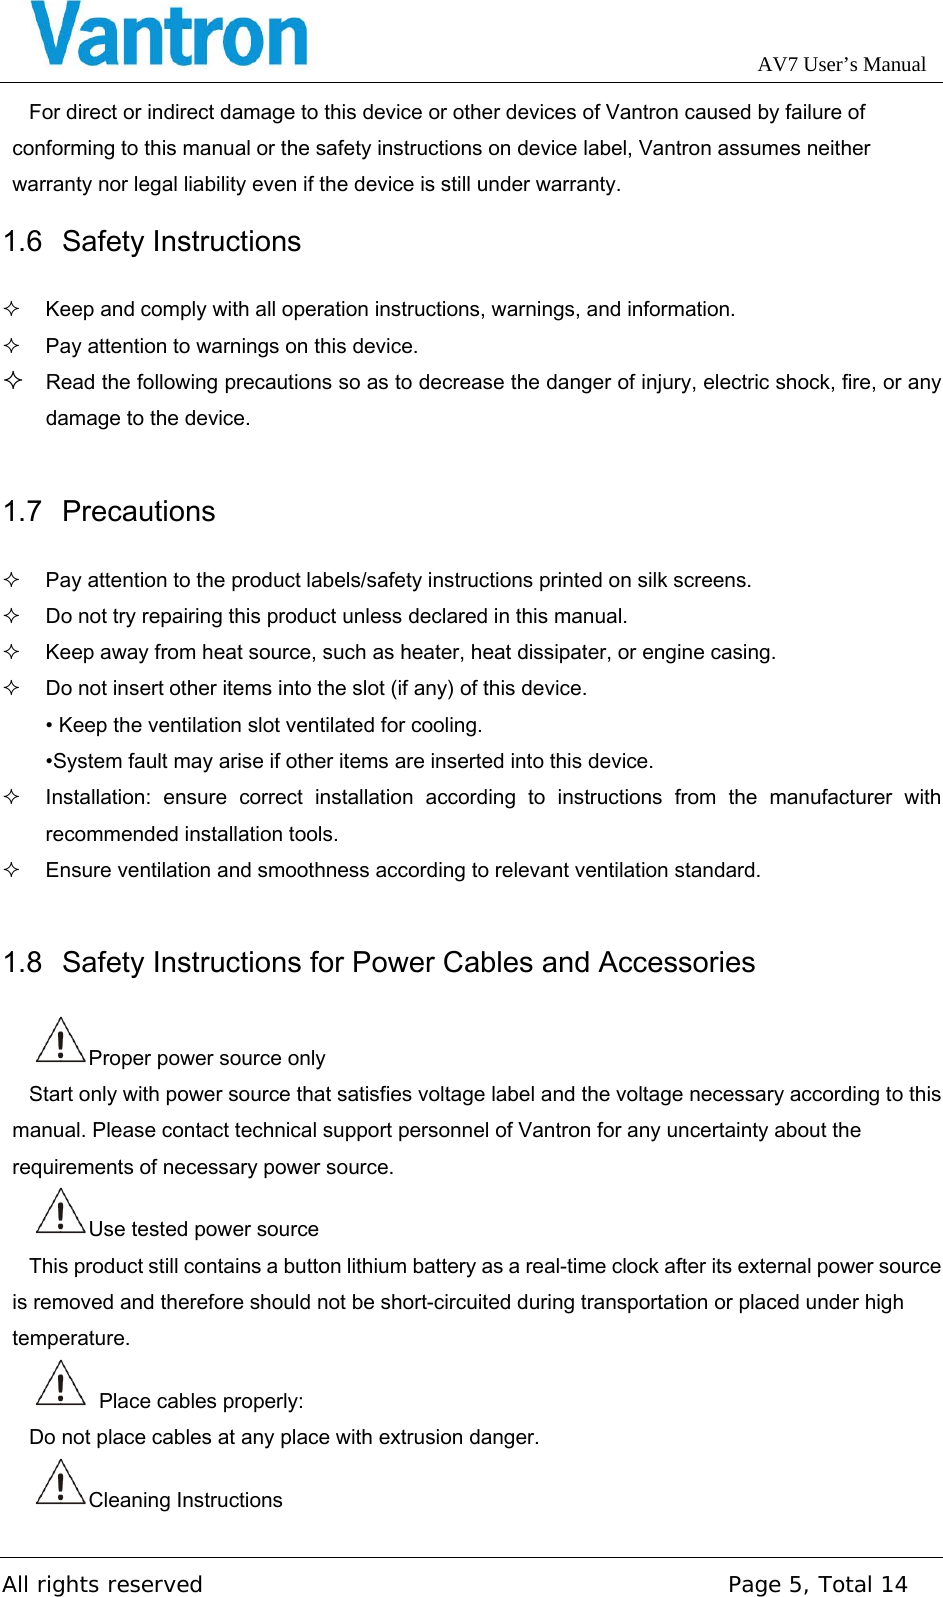 Page 5 of Chengdu Vantron Technology AV5AV72 M2M Gateway application User Manual AV7